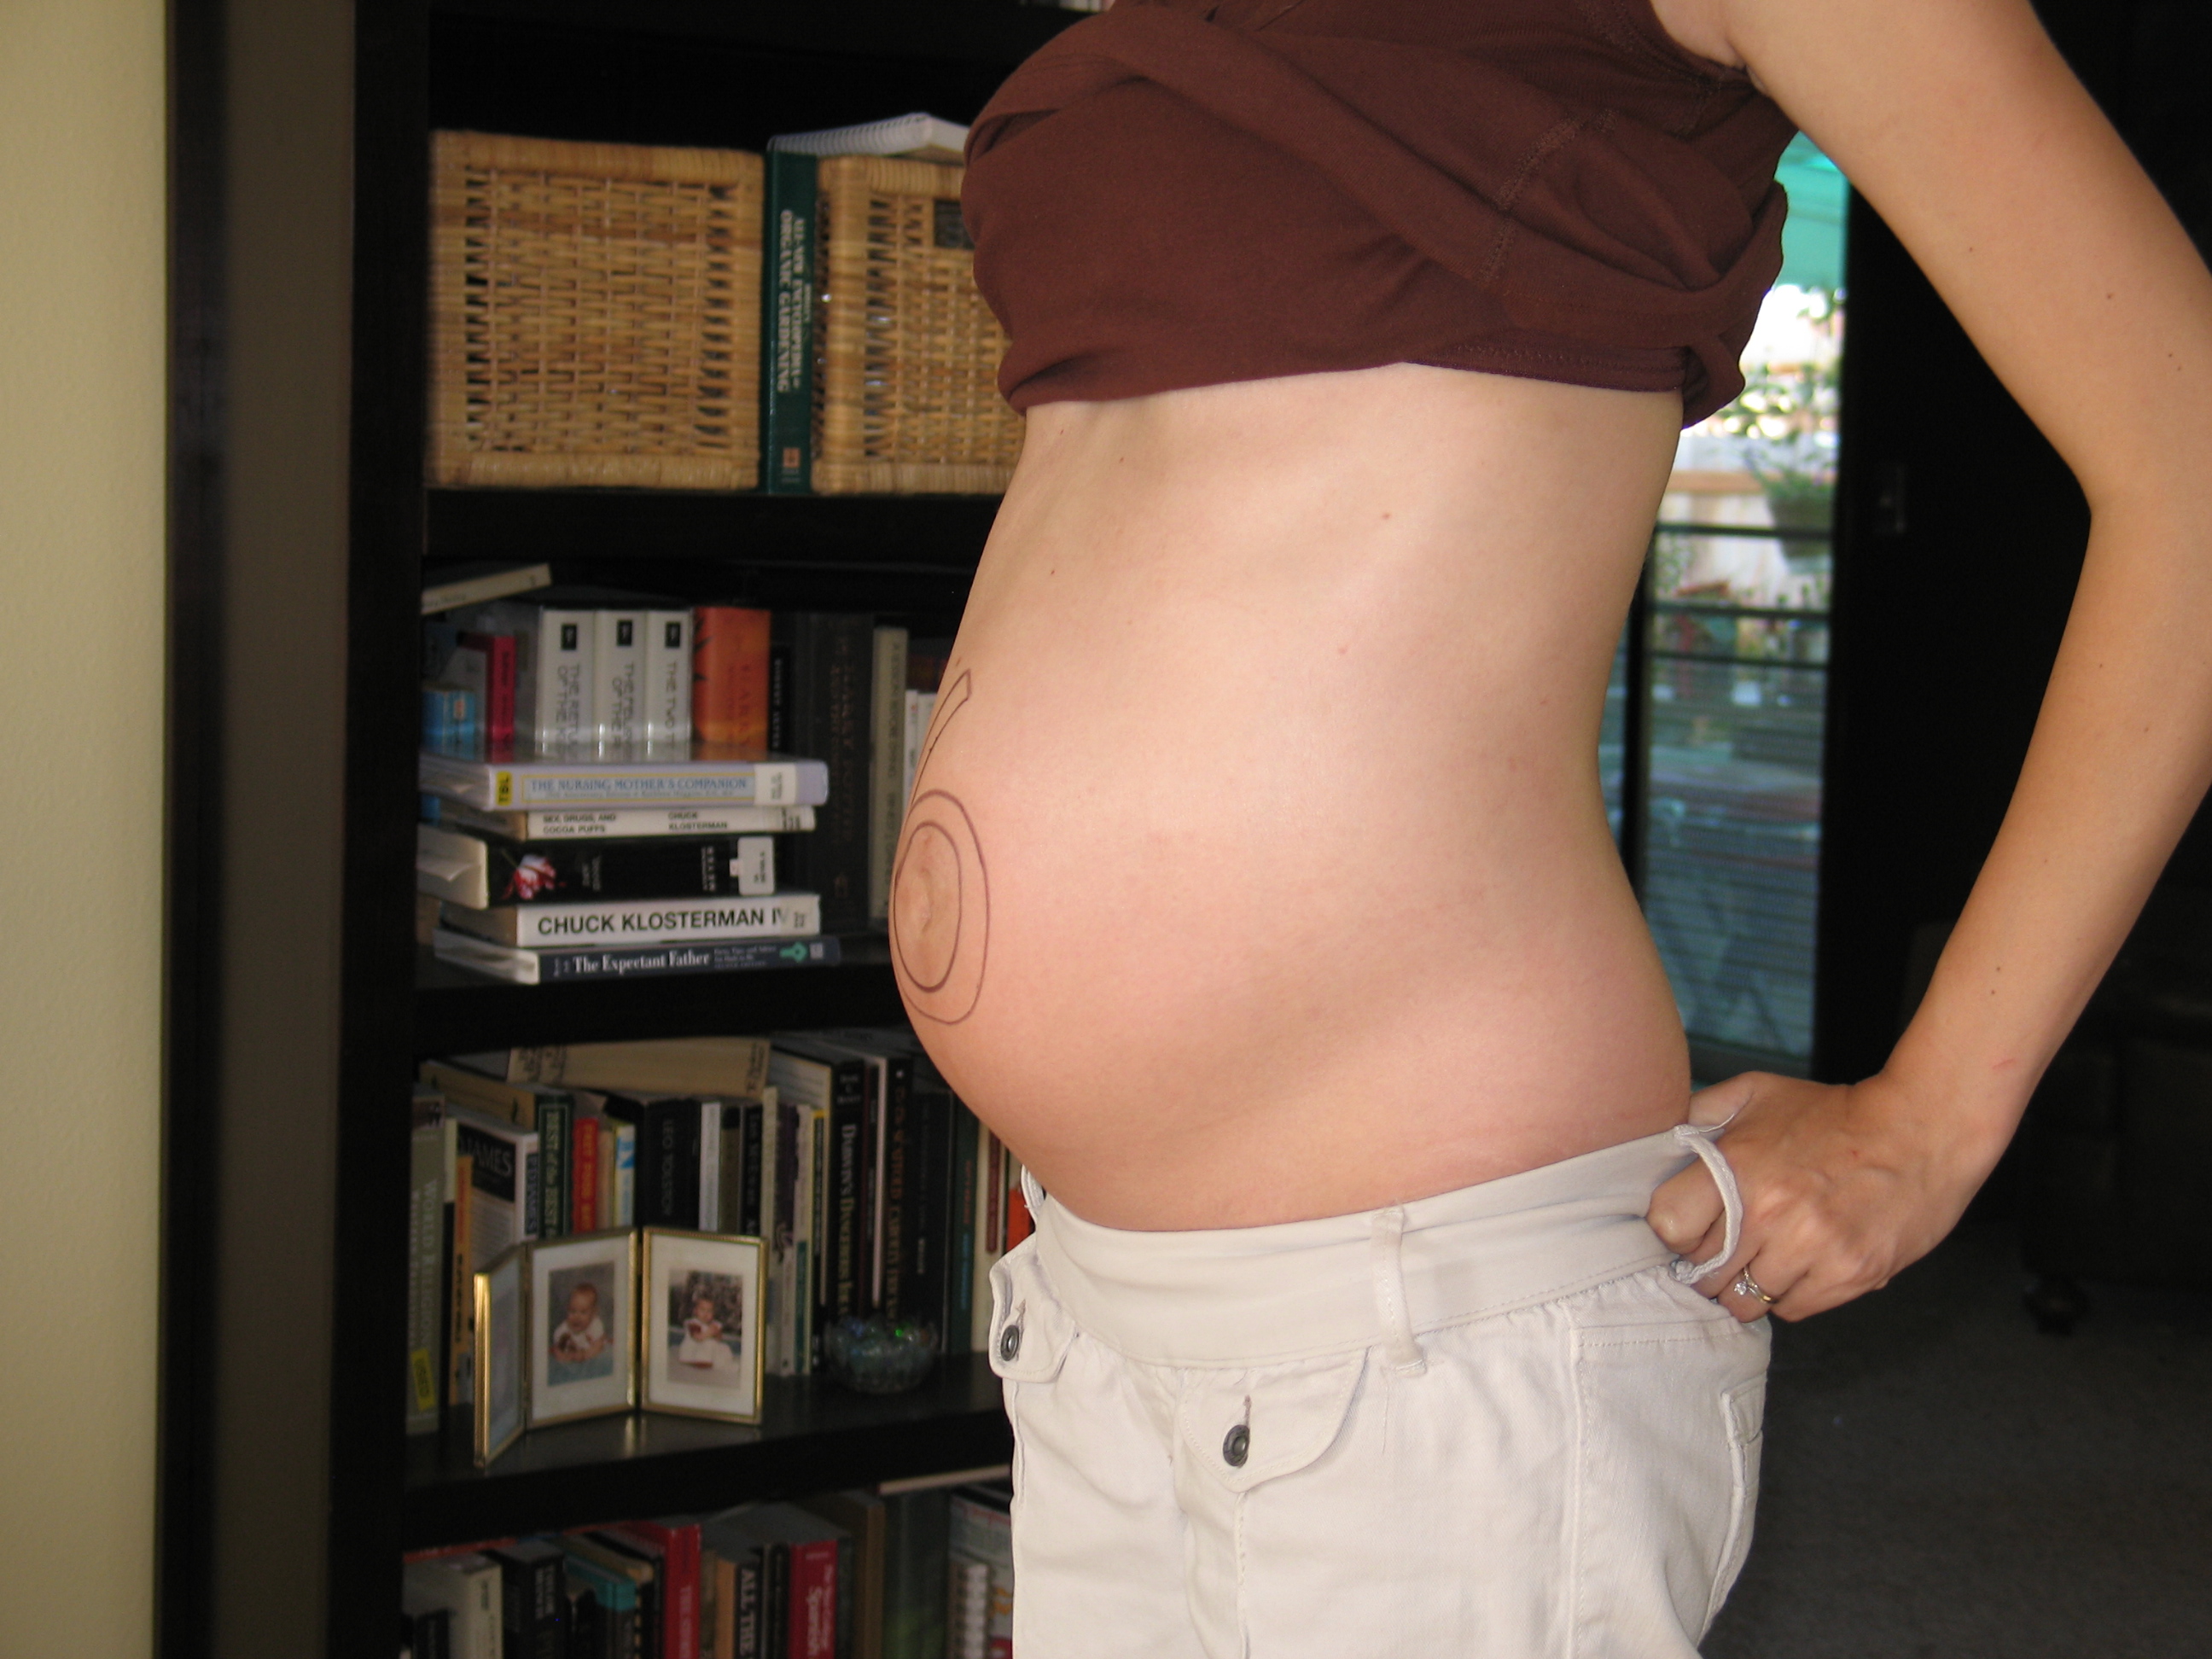 6 й месяц. Живот на 6 месяце. Беременна 6 месяцев. Шесть месяцев беременности. Беременный живот на 6 месяце.